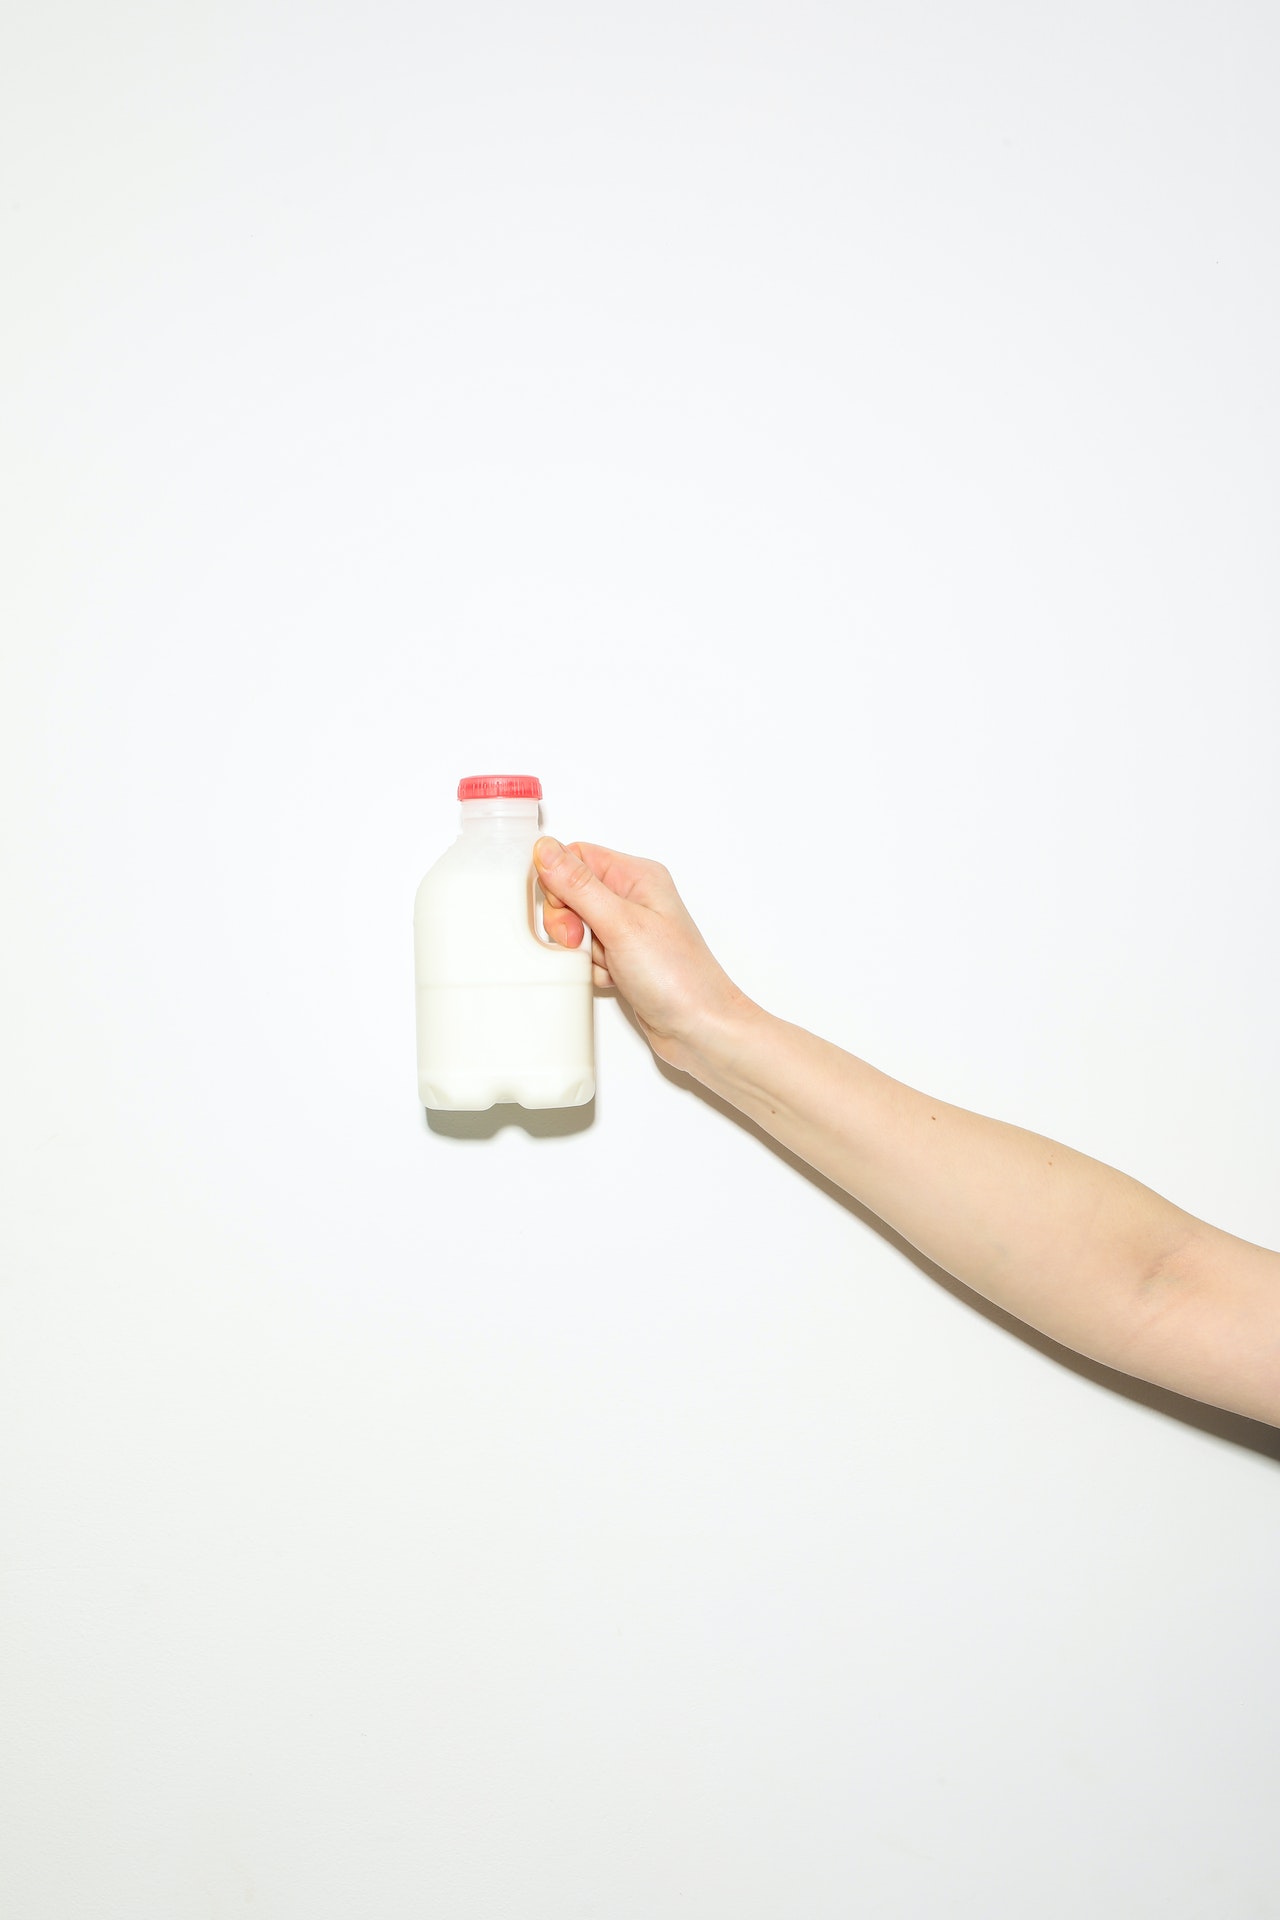 intolérance lactose en France, intolérance lactose, intolérance lait, intolérance lait en France, nombre d'intolérants au lactose, nombre d'intolérants au lactose en France